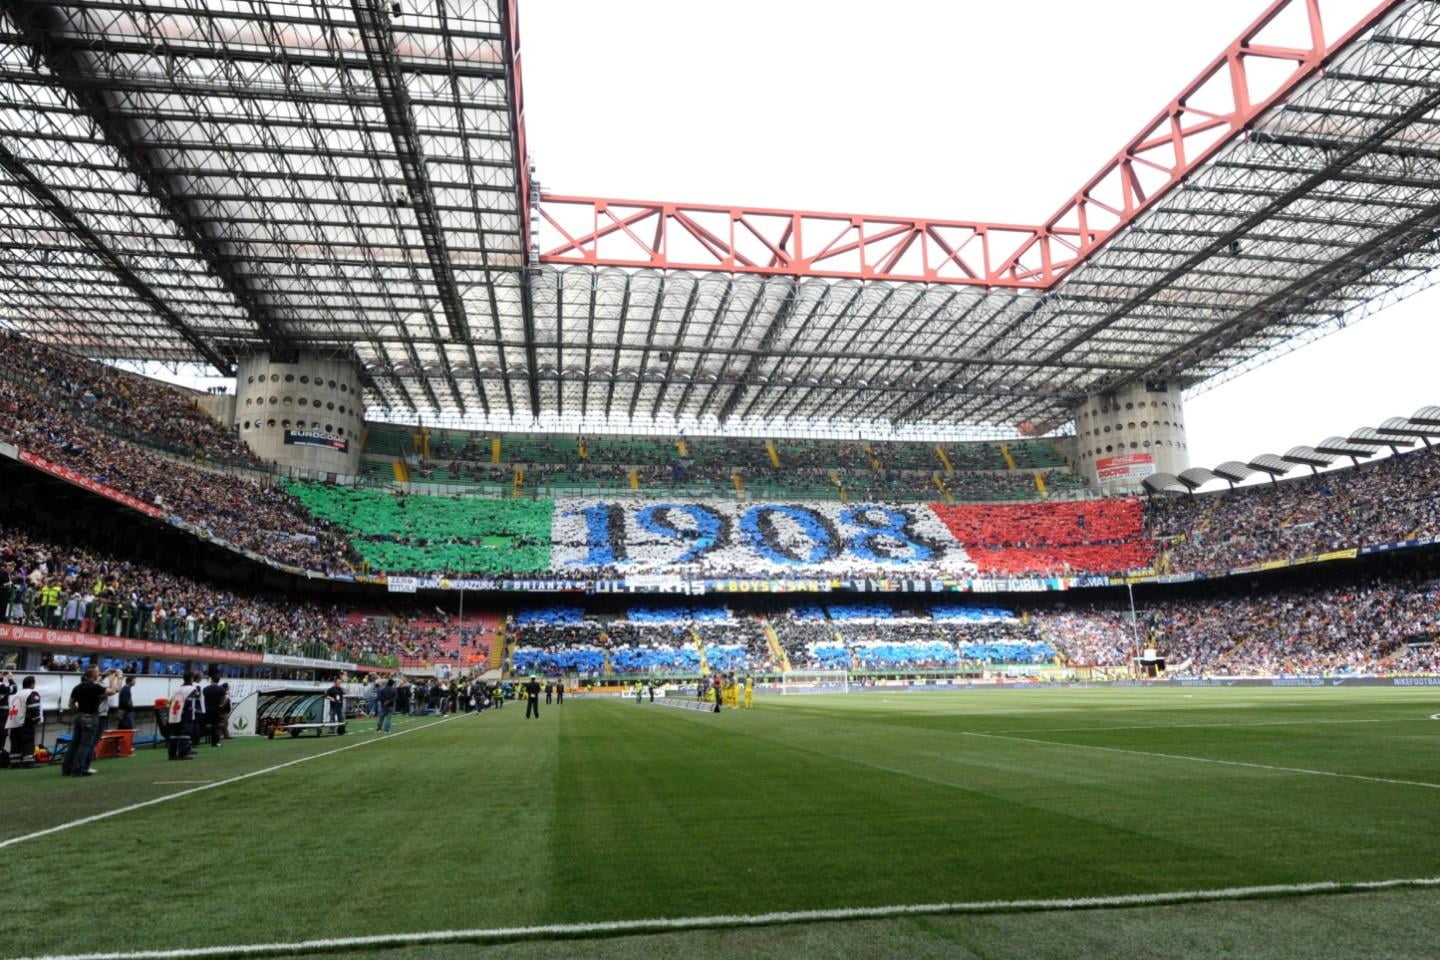 Inter Milan - SSC Napoli, 3 januariom 20:45